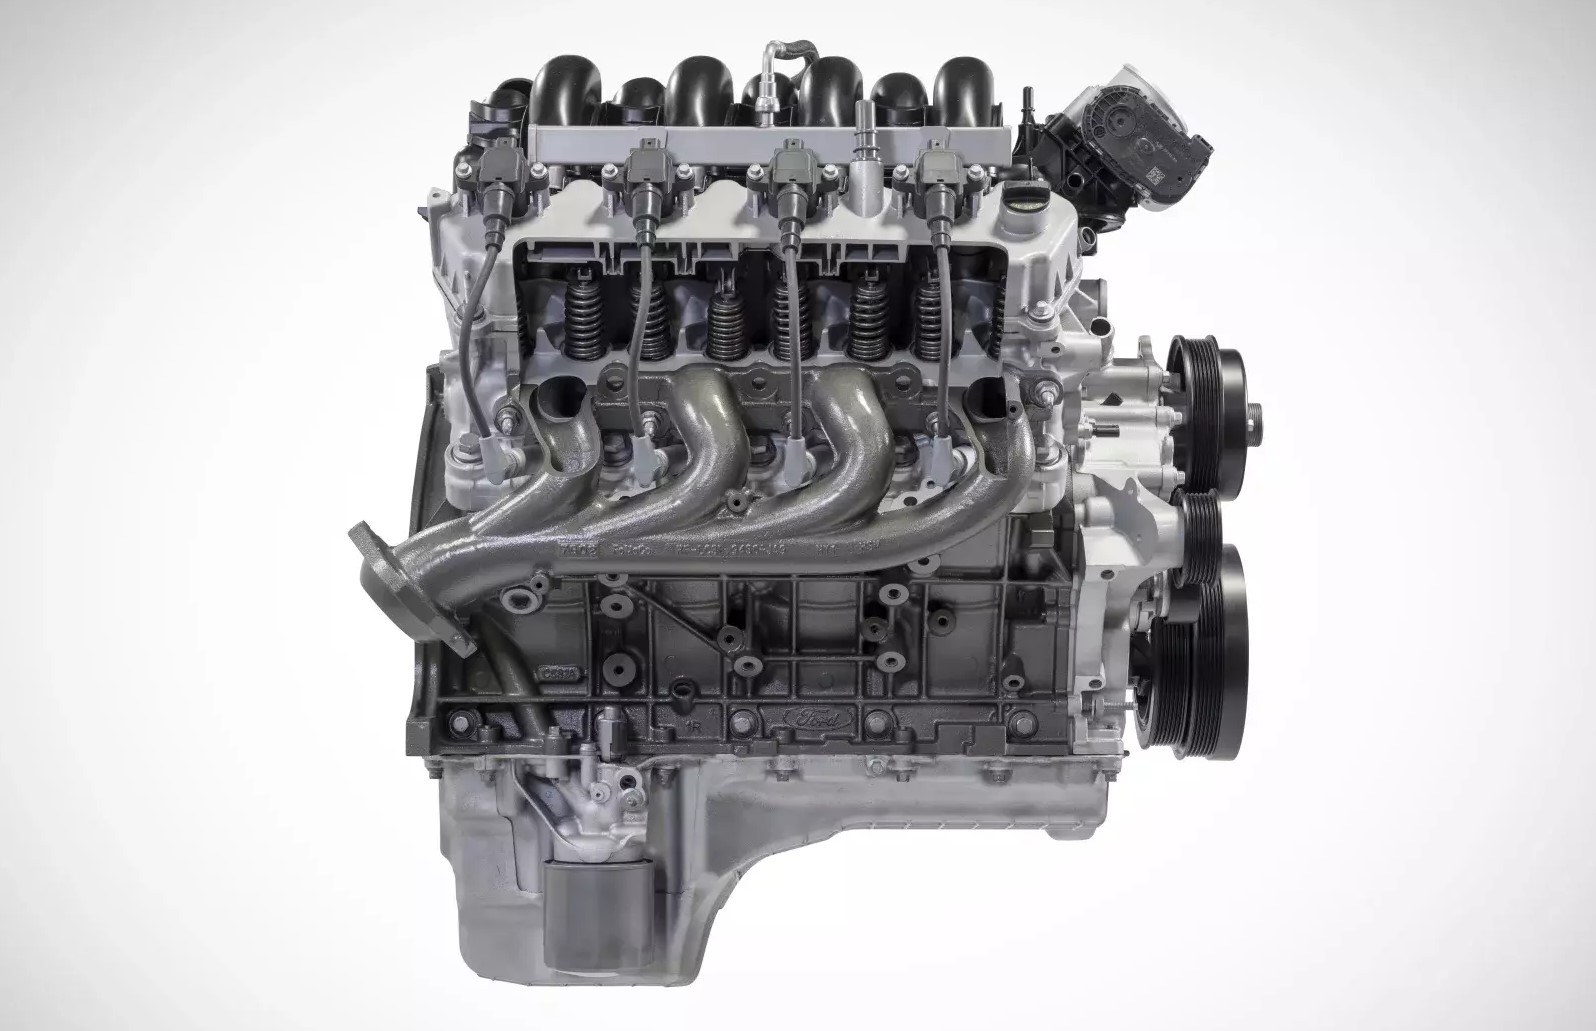 2022 Mustang 6.8 Liter V8 Rumors - 2022 Mustang 6.8 Liter V8 Rumors